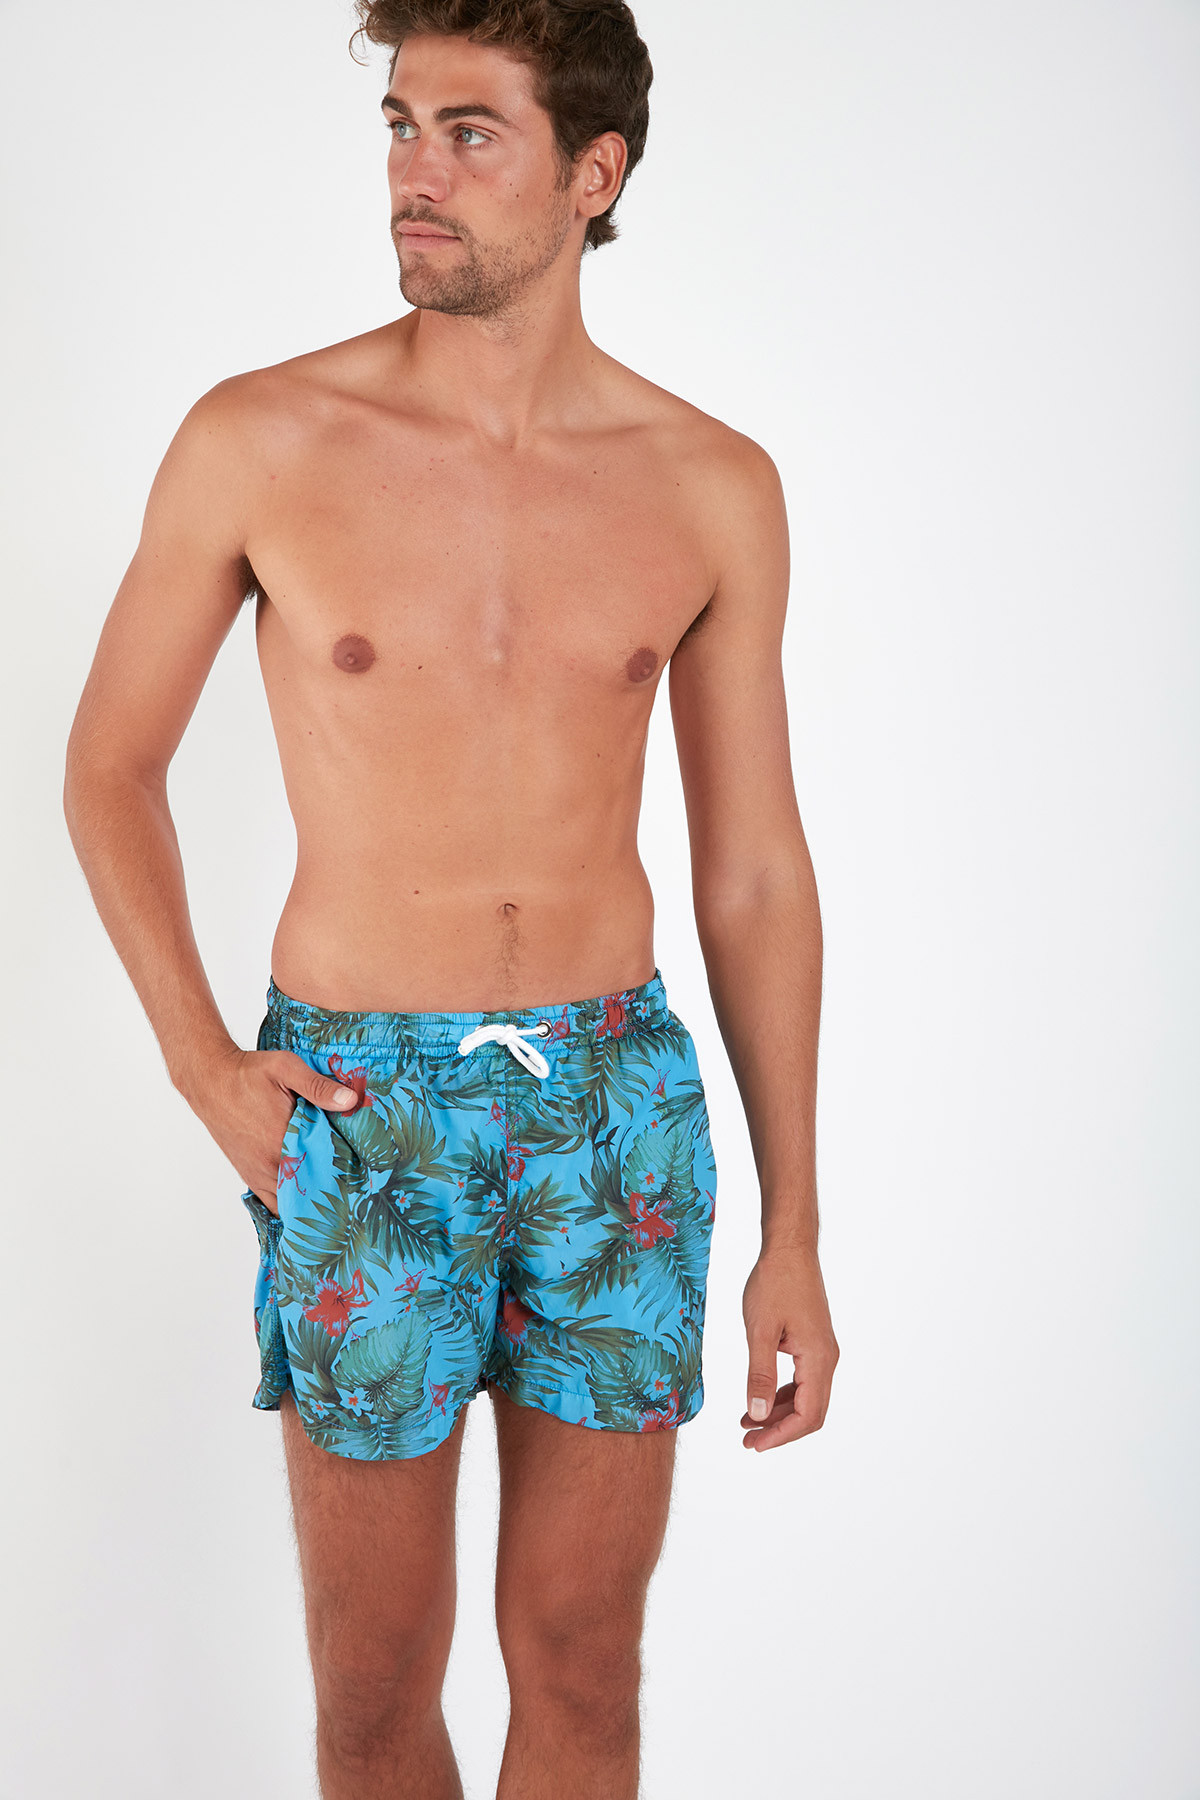 men wearing tied board shorts in turquoise.  Men's swimsuits, Mens  swimwear, Beachwear collection